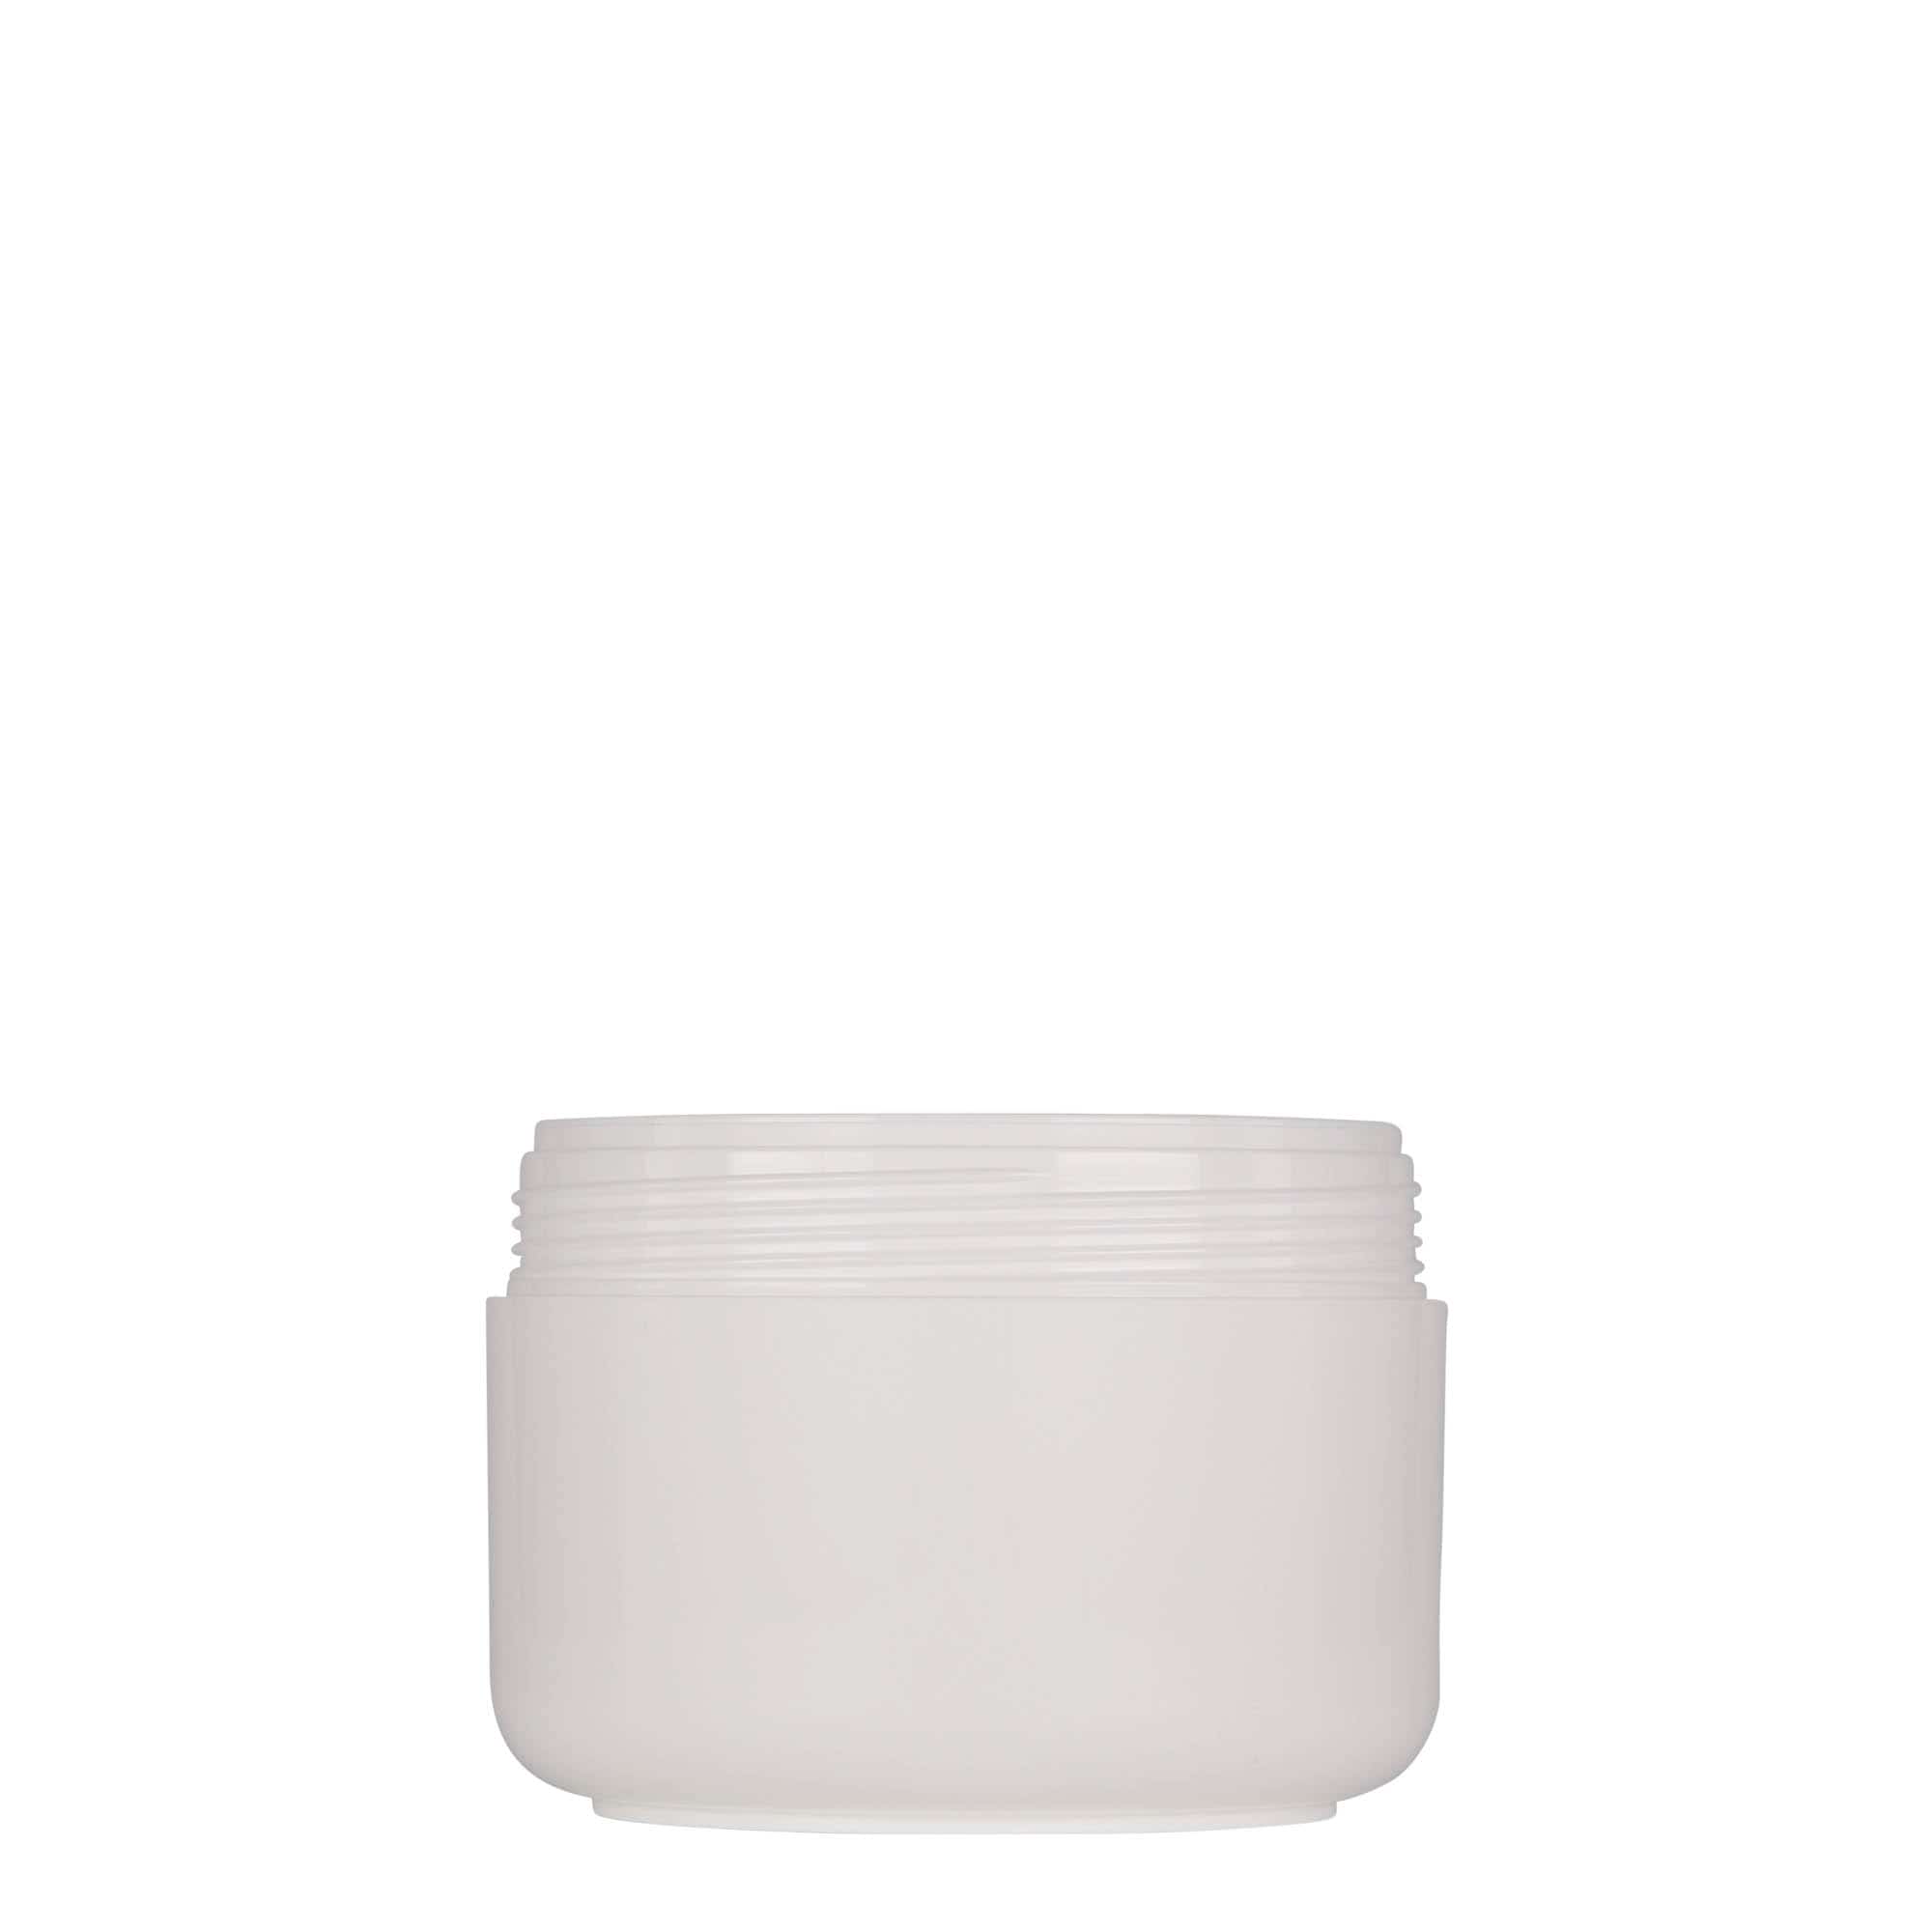 200 ml plastic jar 'Bianca', PP, white, closure: screw cap